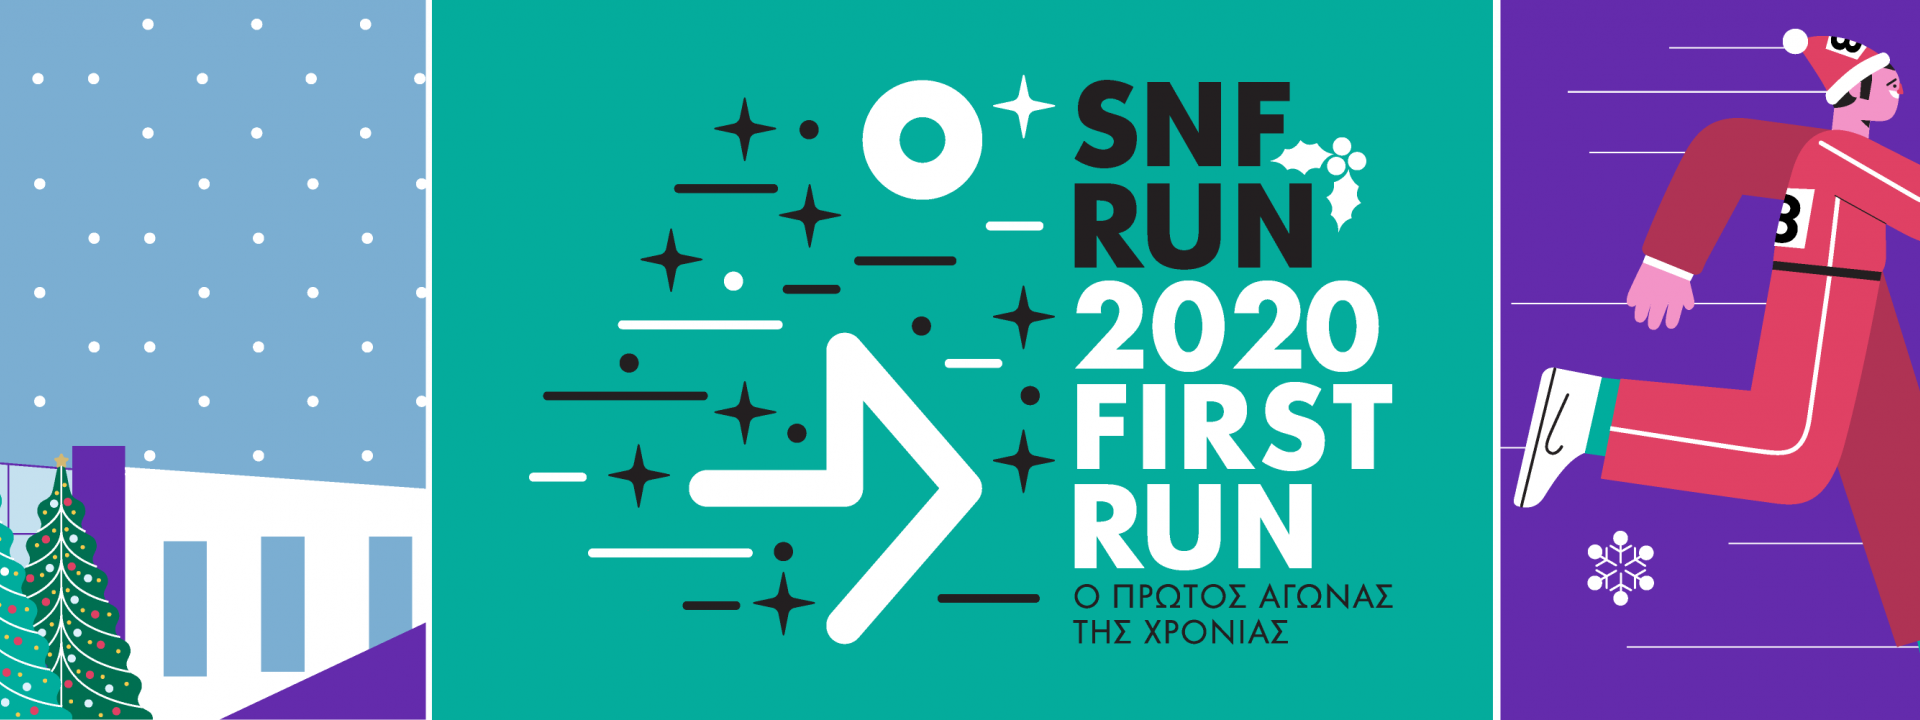 Εικαστικό για τον αγώνα τρεξίματος SNF Run